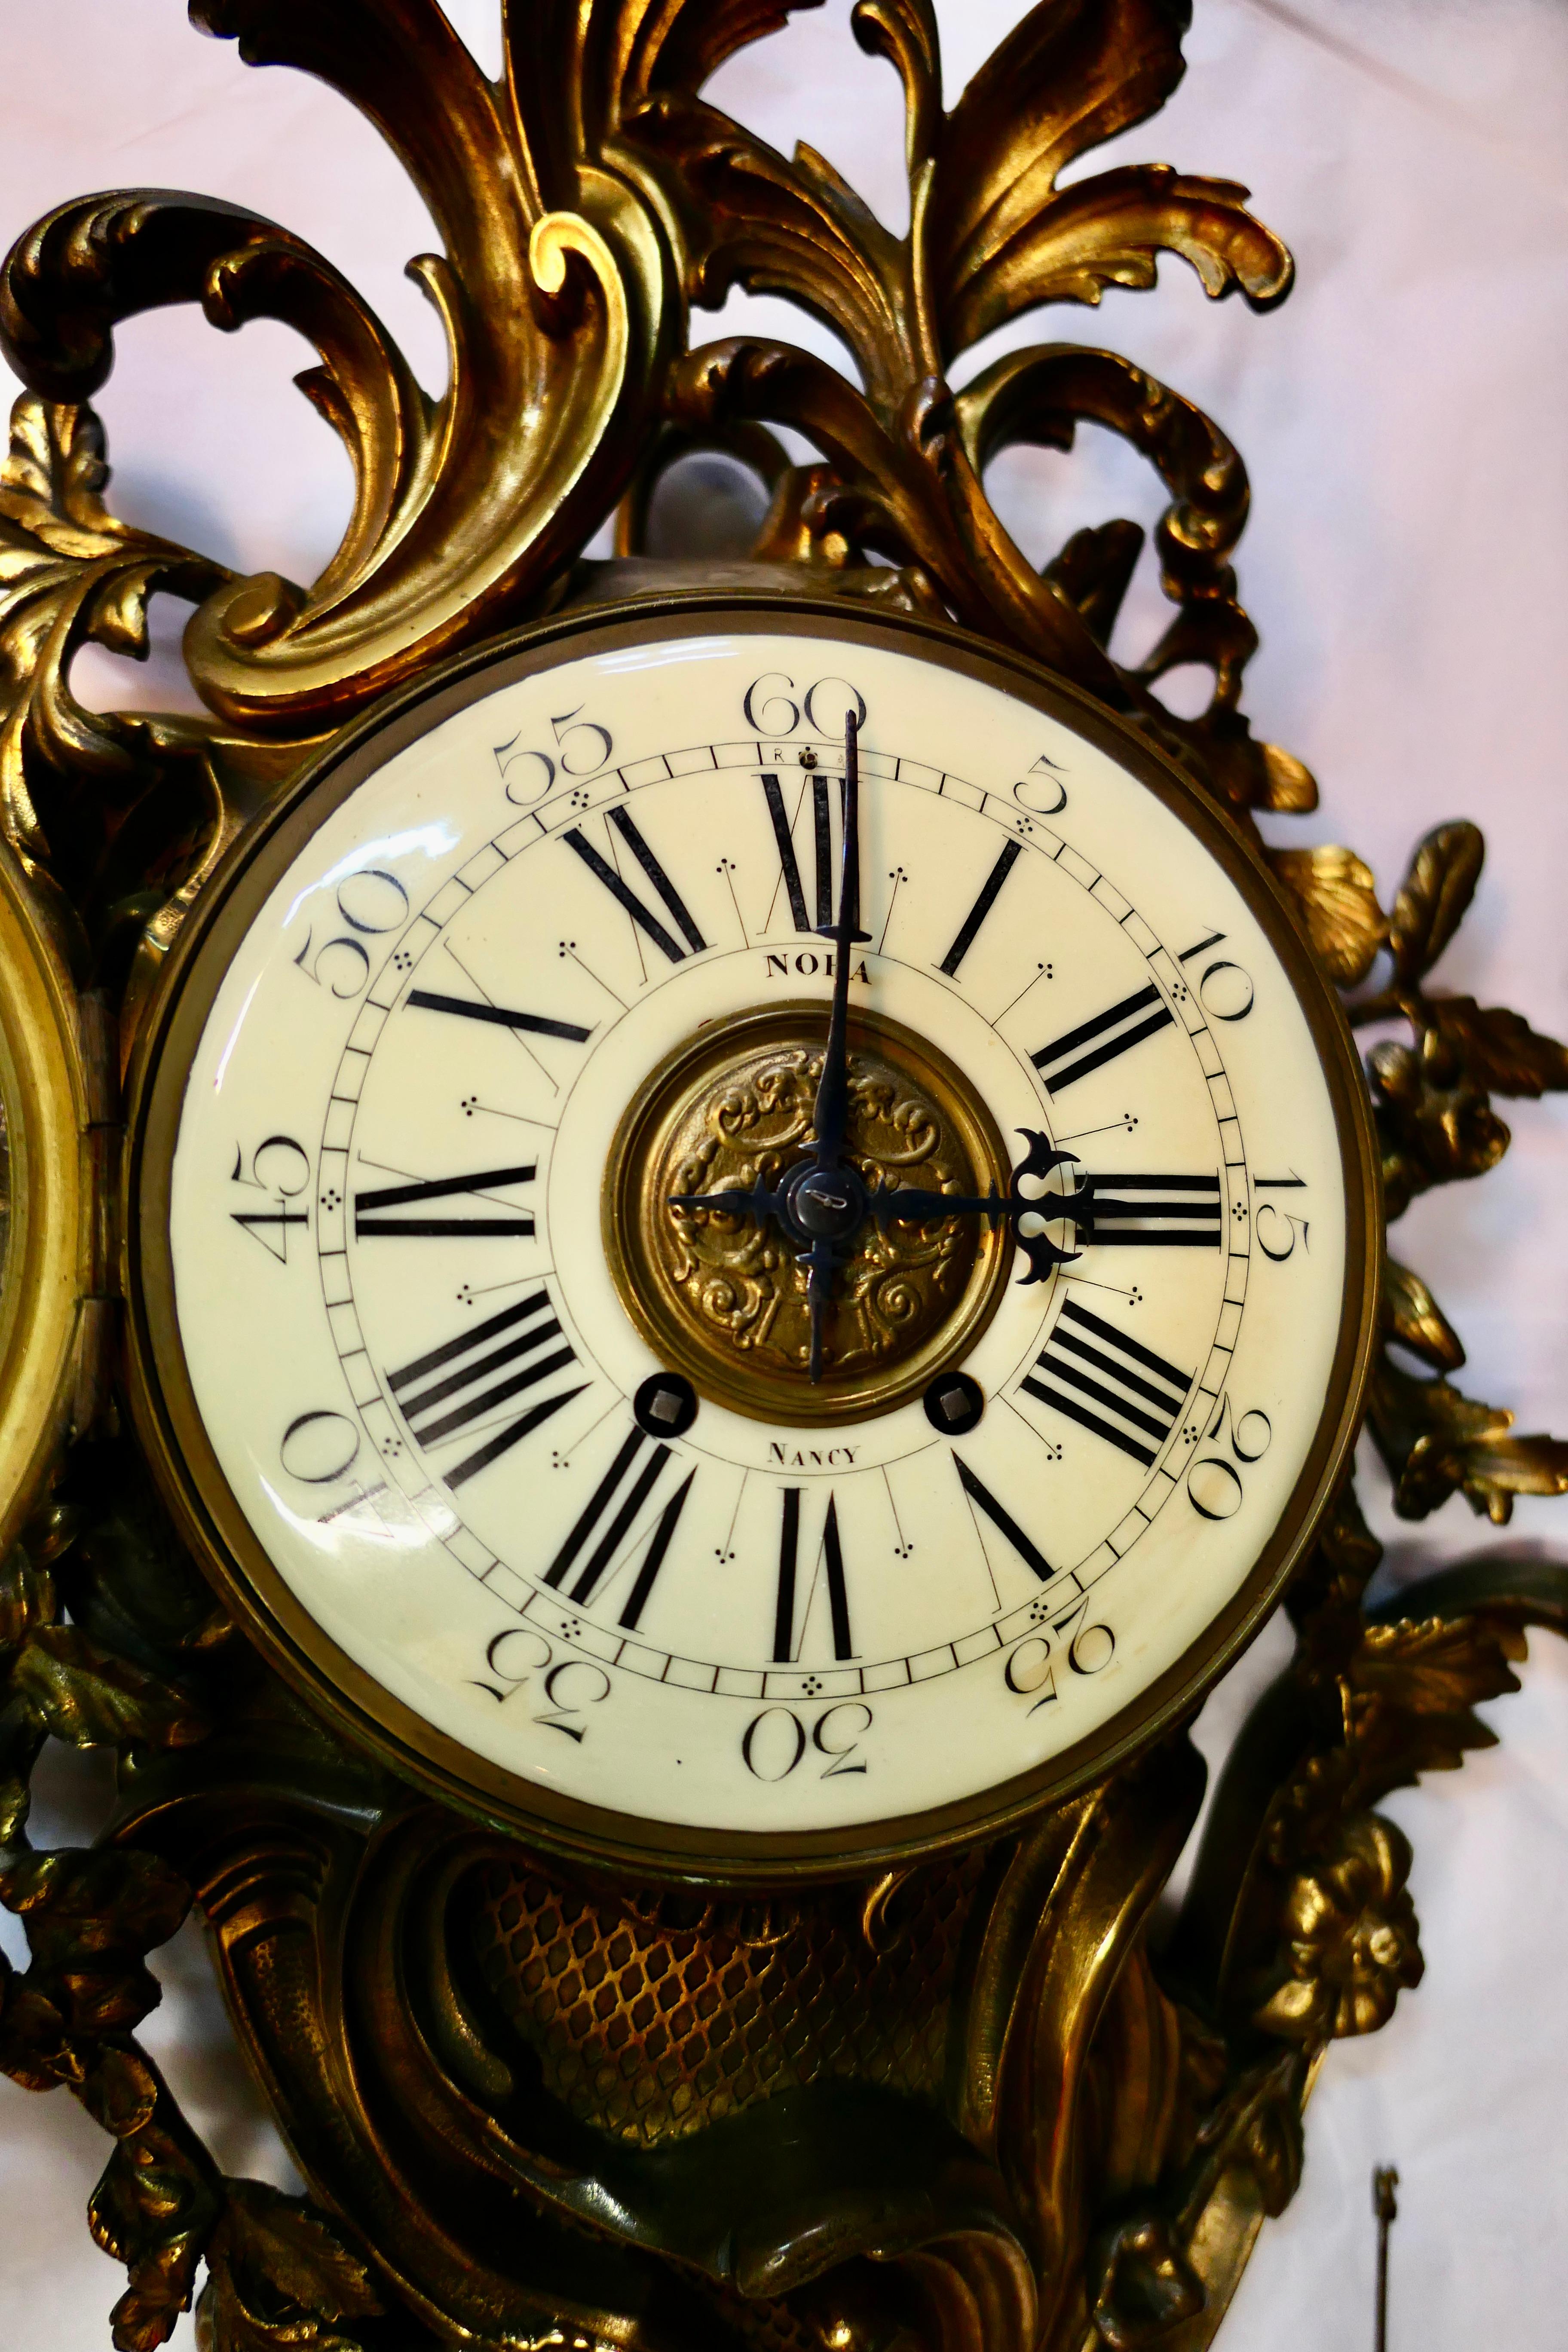 Cette horloge cartel (murale) française du milieu du 19e siècle de style Louis XV est magnifiquement conçue. Cette grande horloge en bronze sculpté est décorée de feuilles et de vignes florales qui dominent son apparence. Une face émaillée de